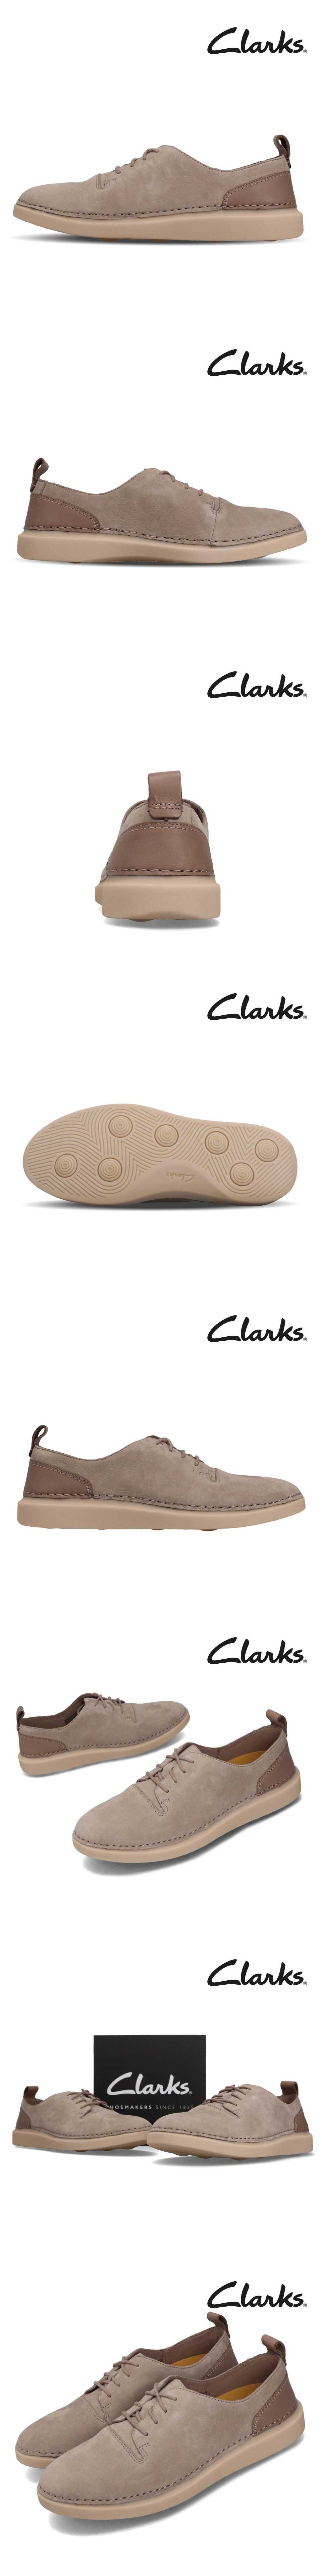 Clarks 休閒鞋 Hale Lace 皮革 女鞋